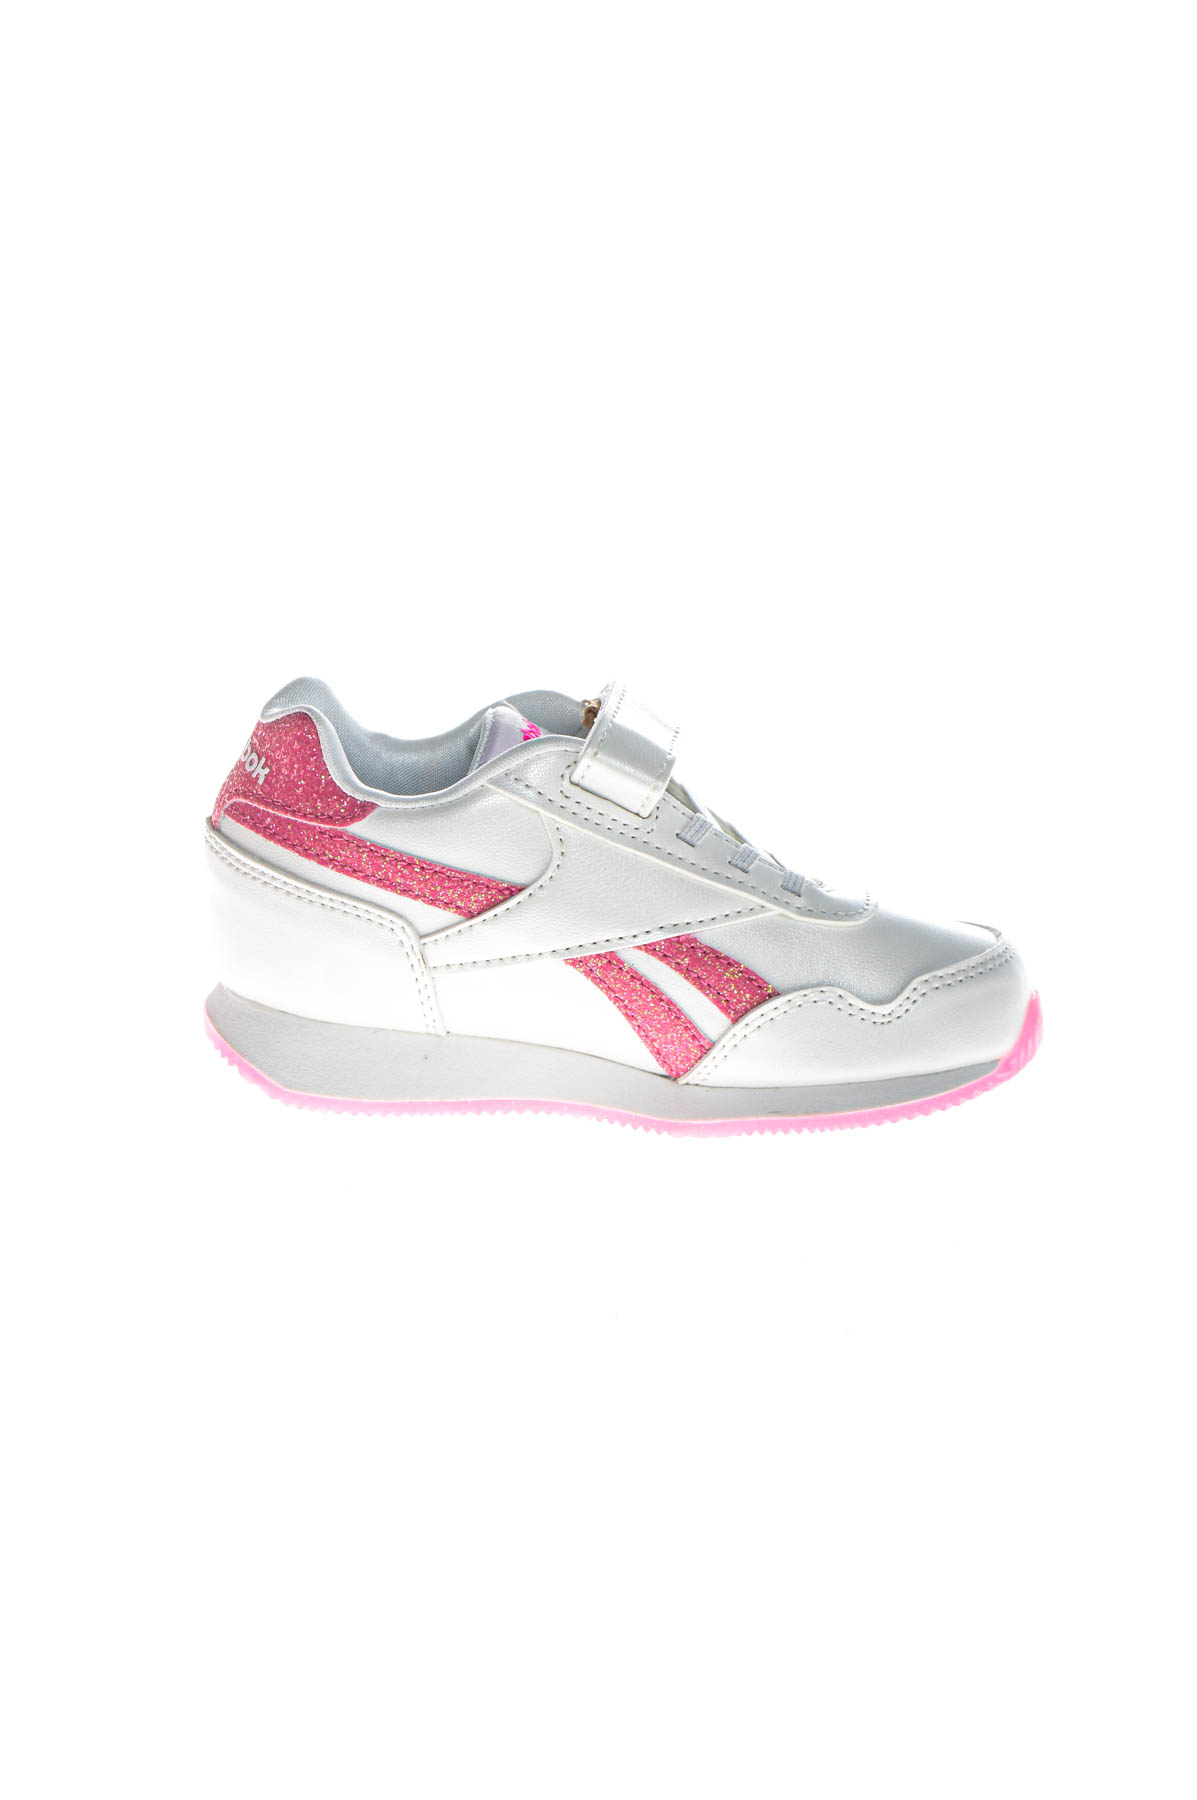 Girls sneakers - Reebok - 2